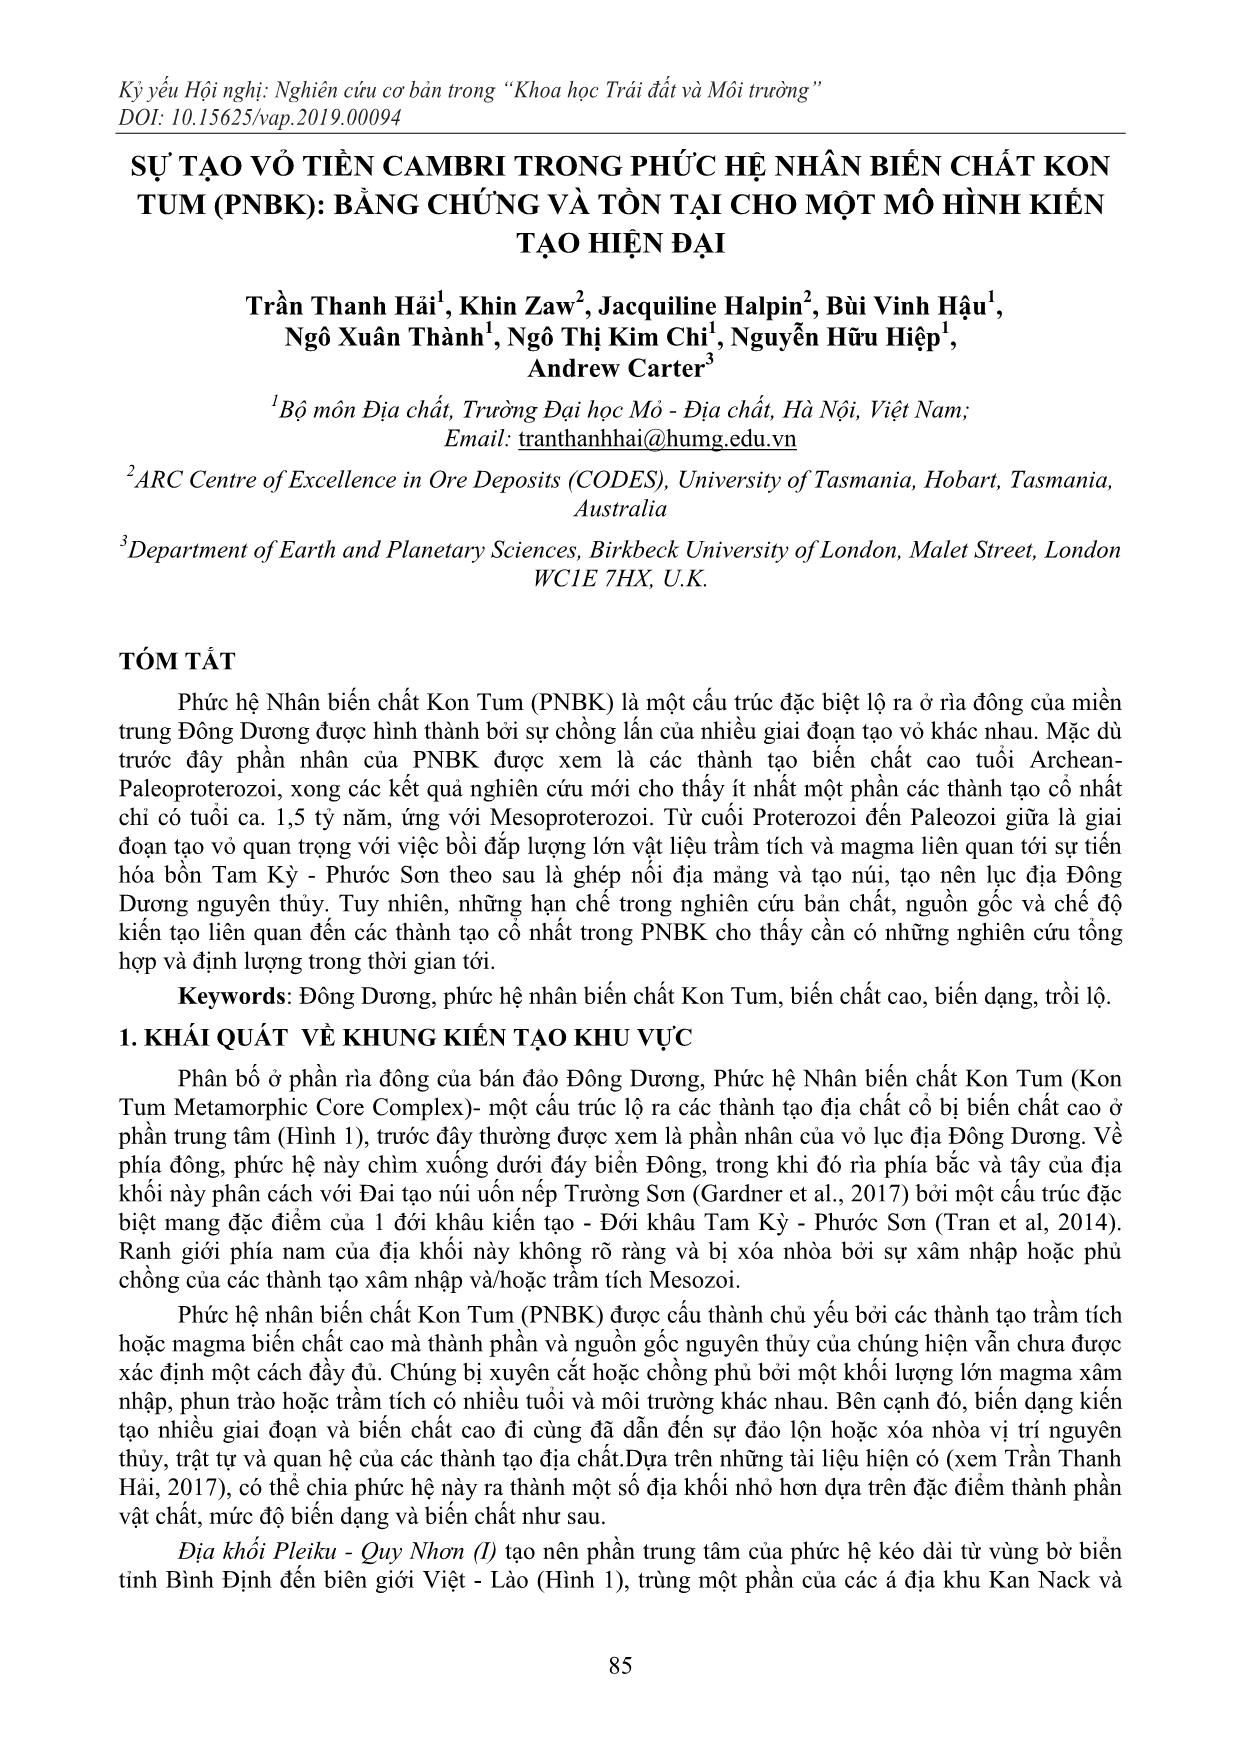 Sự tạo vỏ tiền Cambri trong phức hệ nhân biến chất Kon Tum (PNBK): bằng chứng và tồn tại cho một mô hình kiến tạo hiện đại trang 1